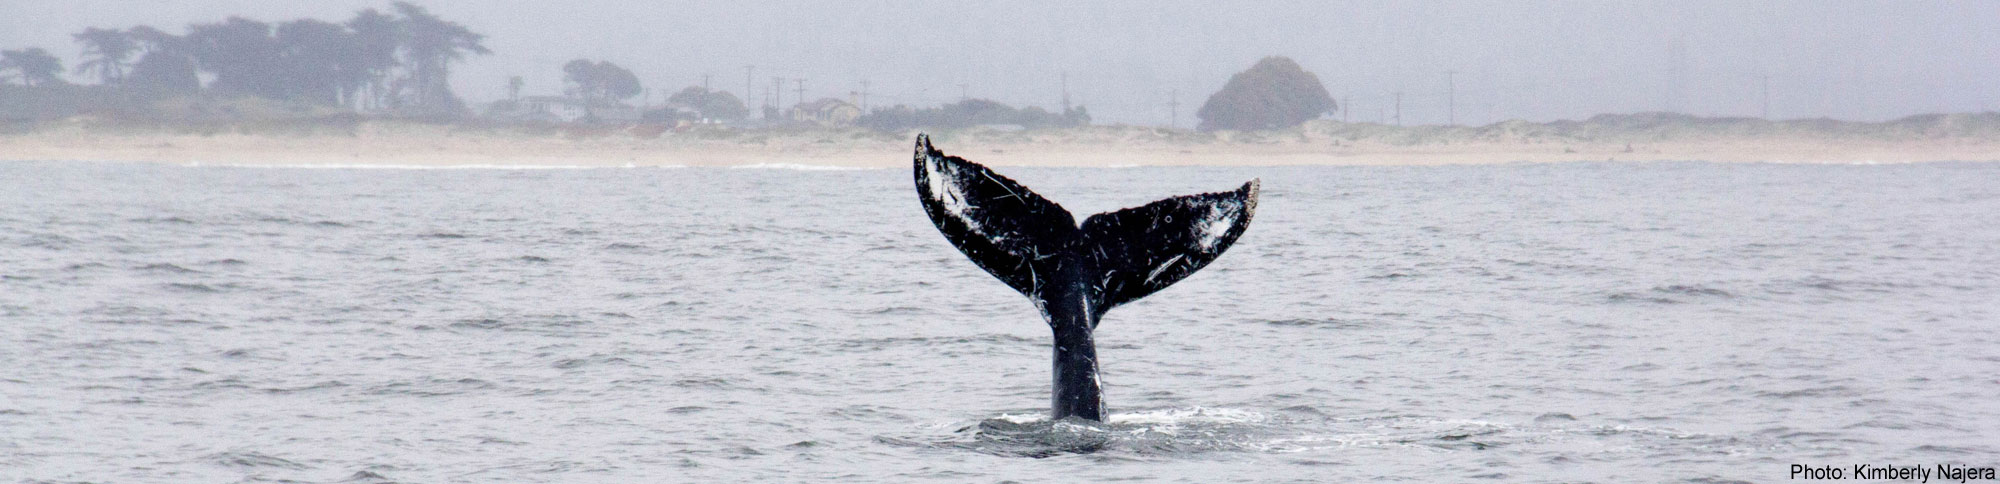 Whale fluke, Photo by Kimberly Najera